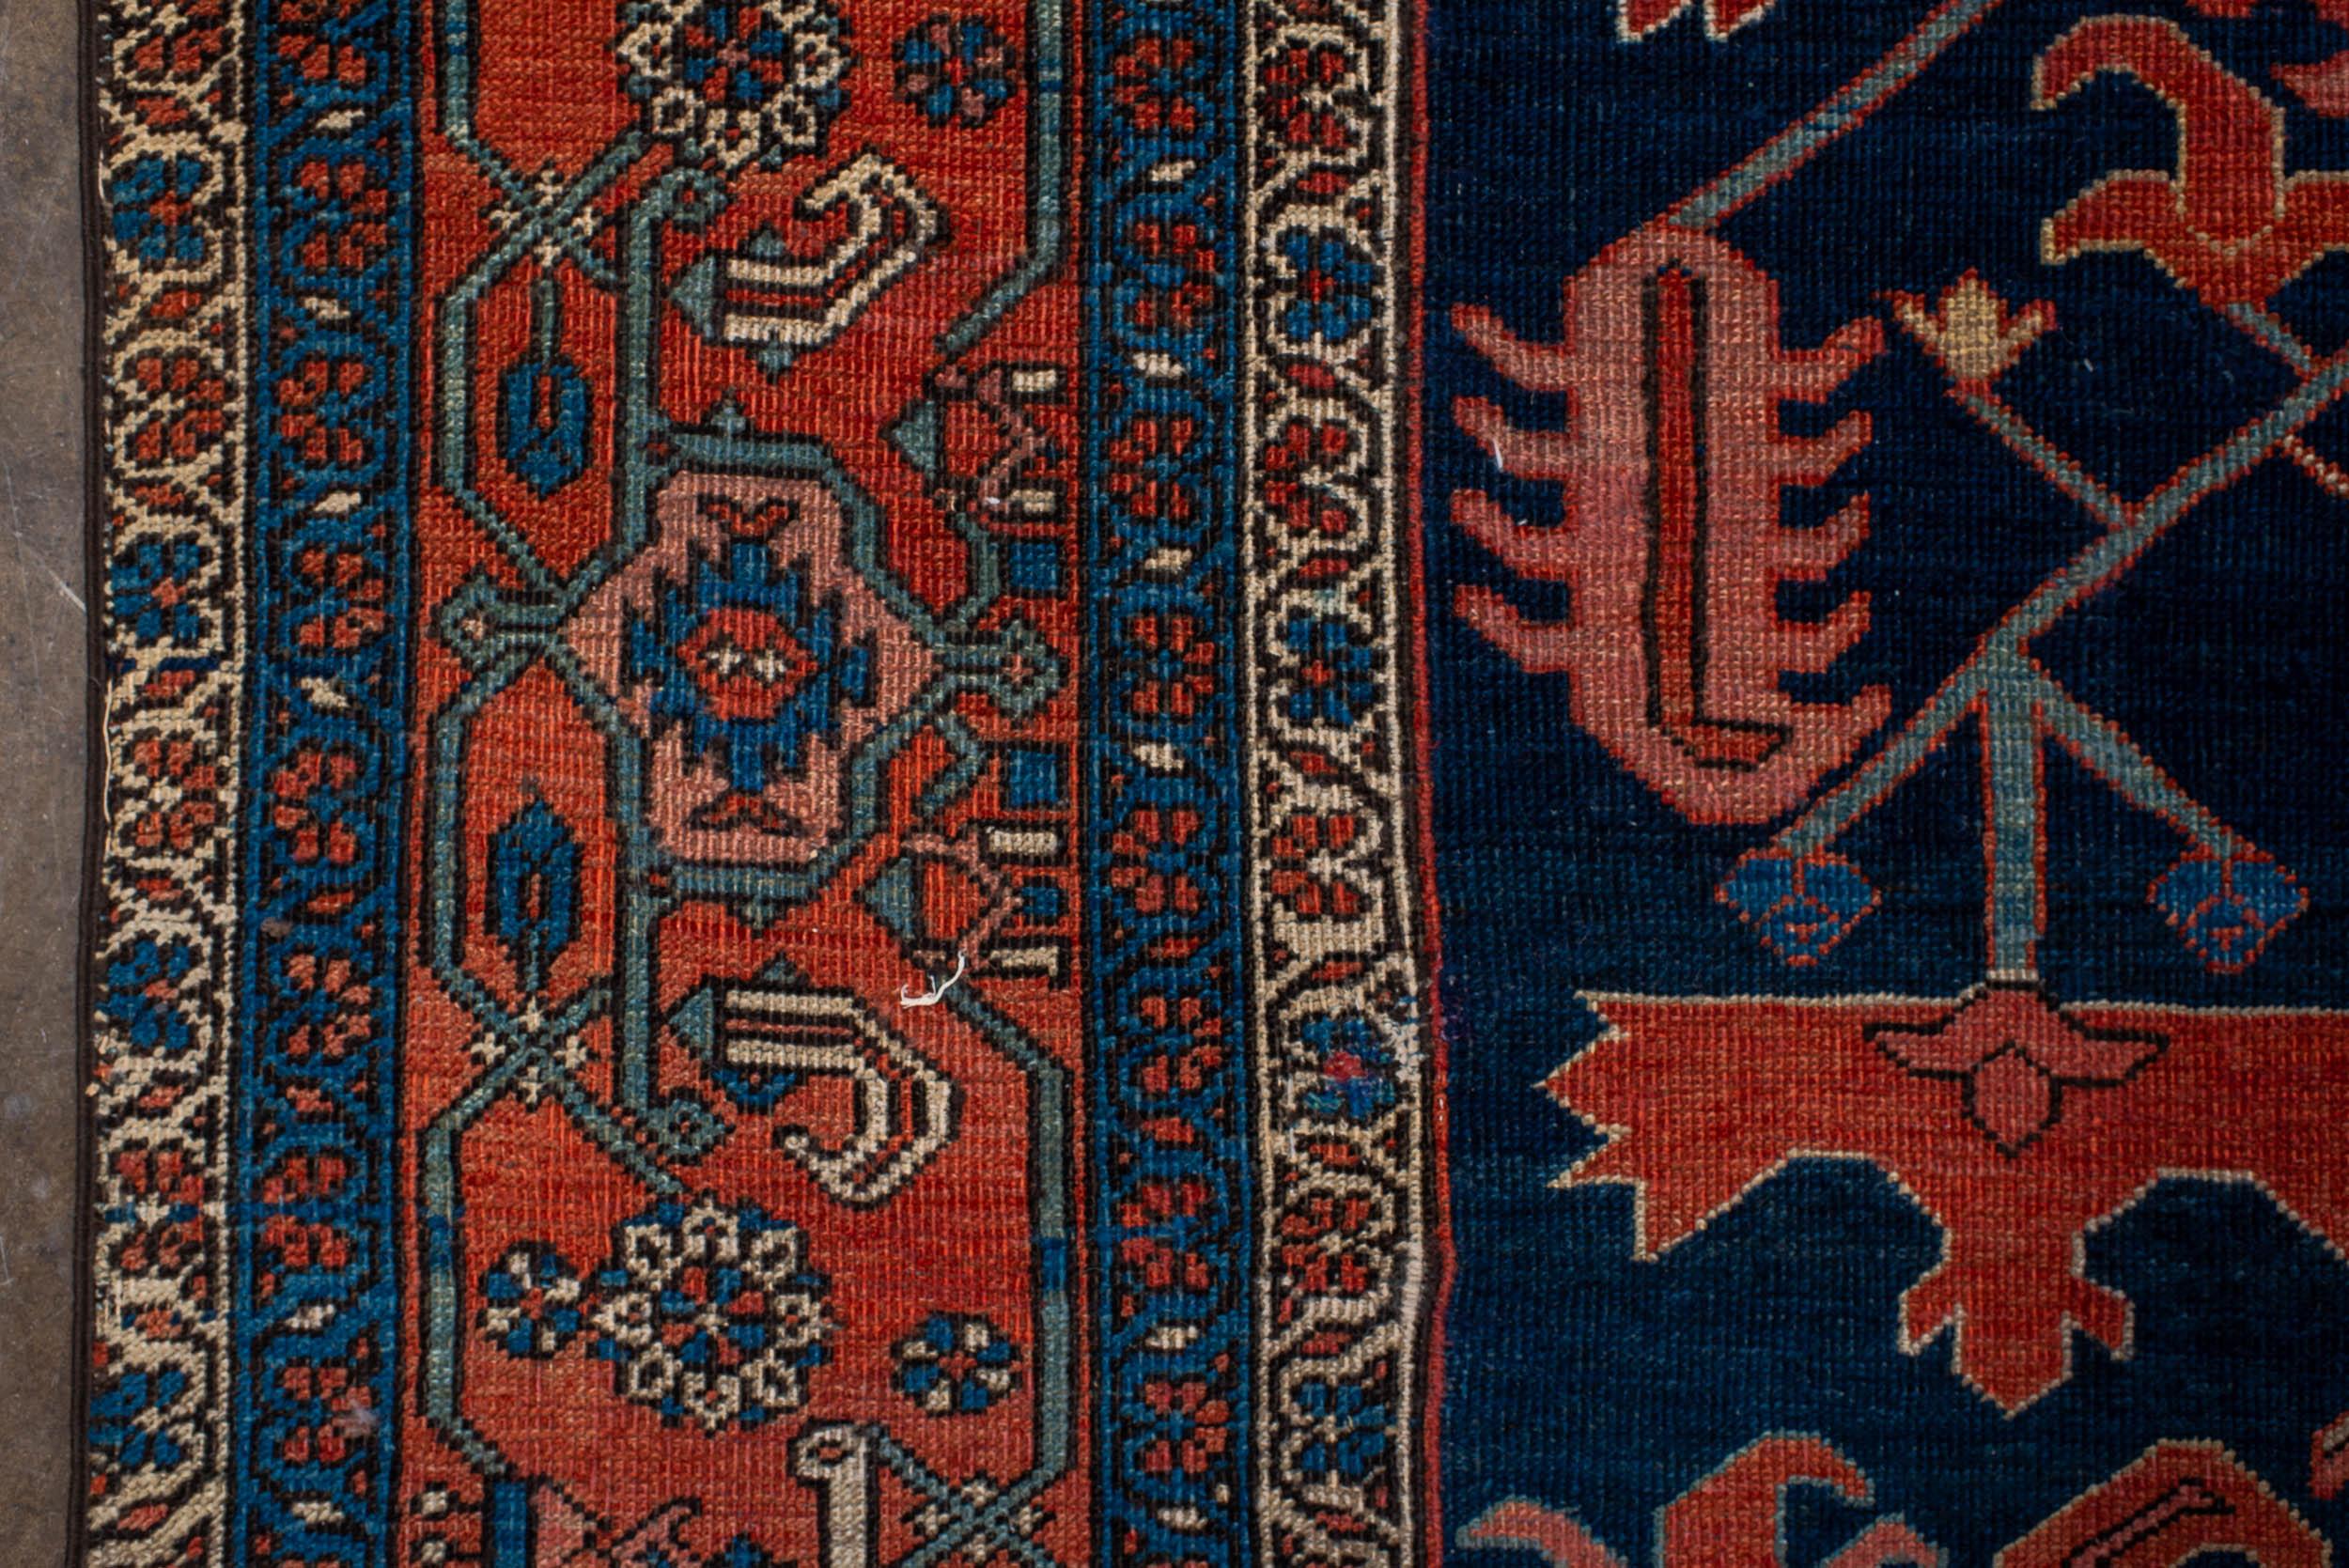 Un tapis traditionnel Heriz de conception géométrique avec un fond bleu marine profond entourant un motif central ivoire et rouille, les écoinçons soulignant le motif général. Les bordures principales et secondaires qui l'entourent contribuent à